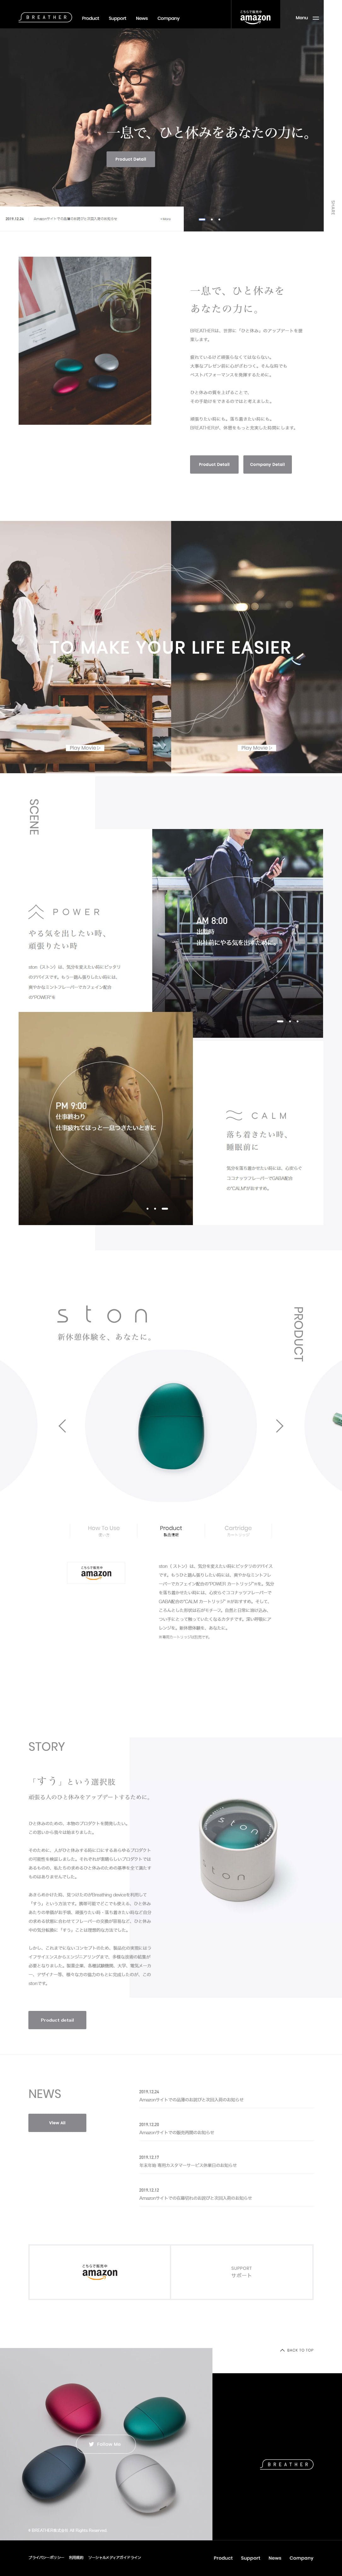 ston 公式サイト | BREATHER株式会社